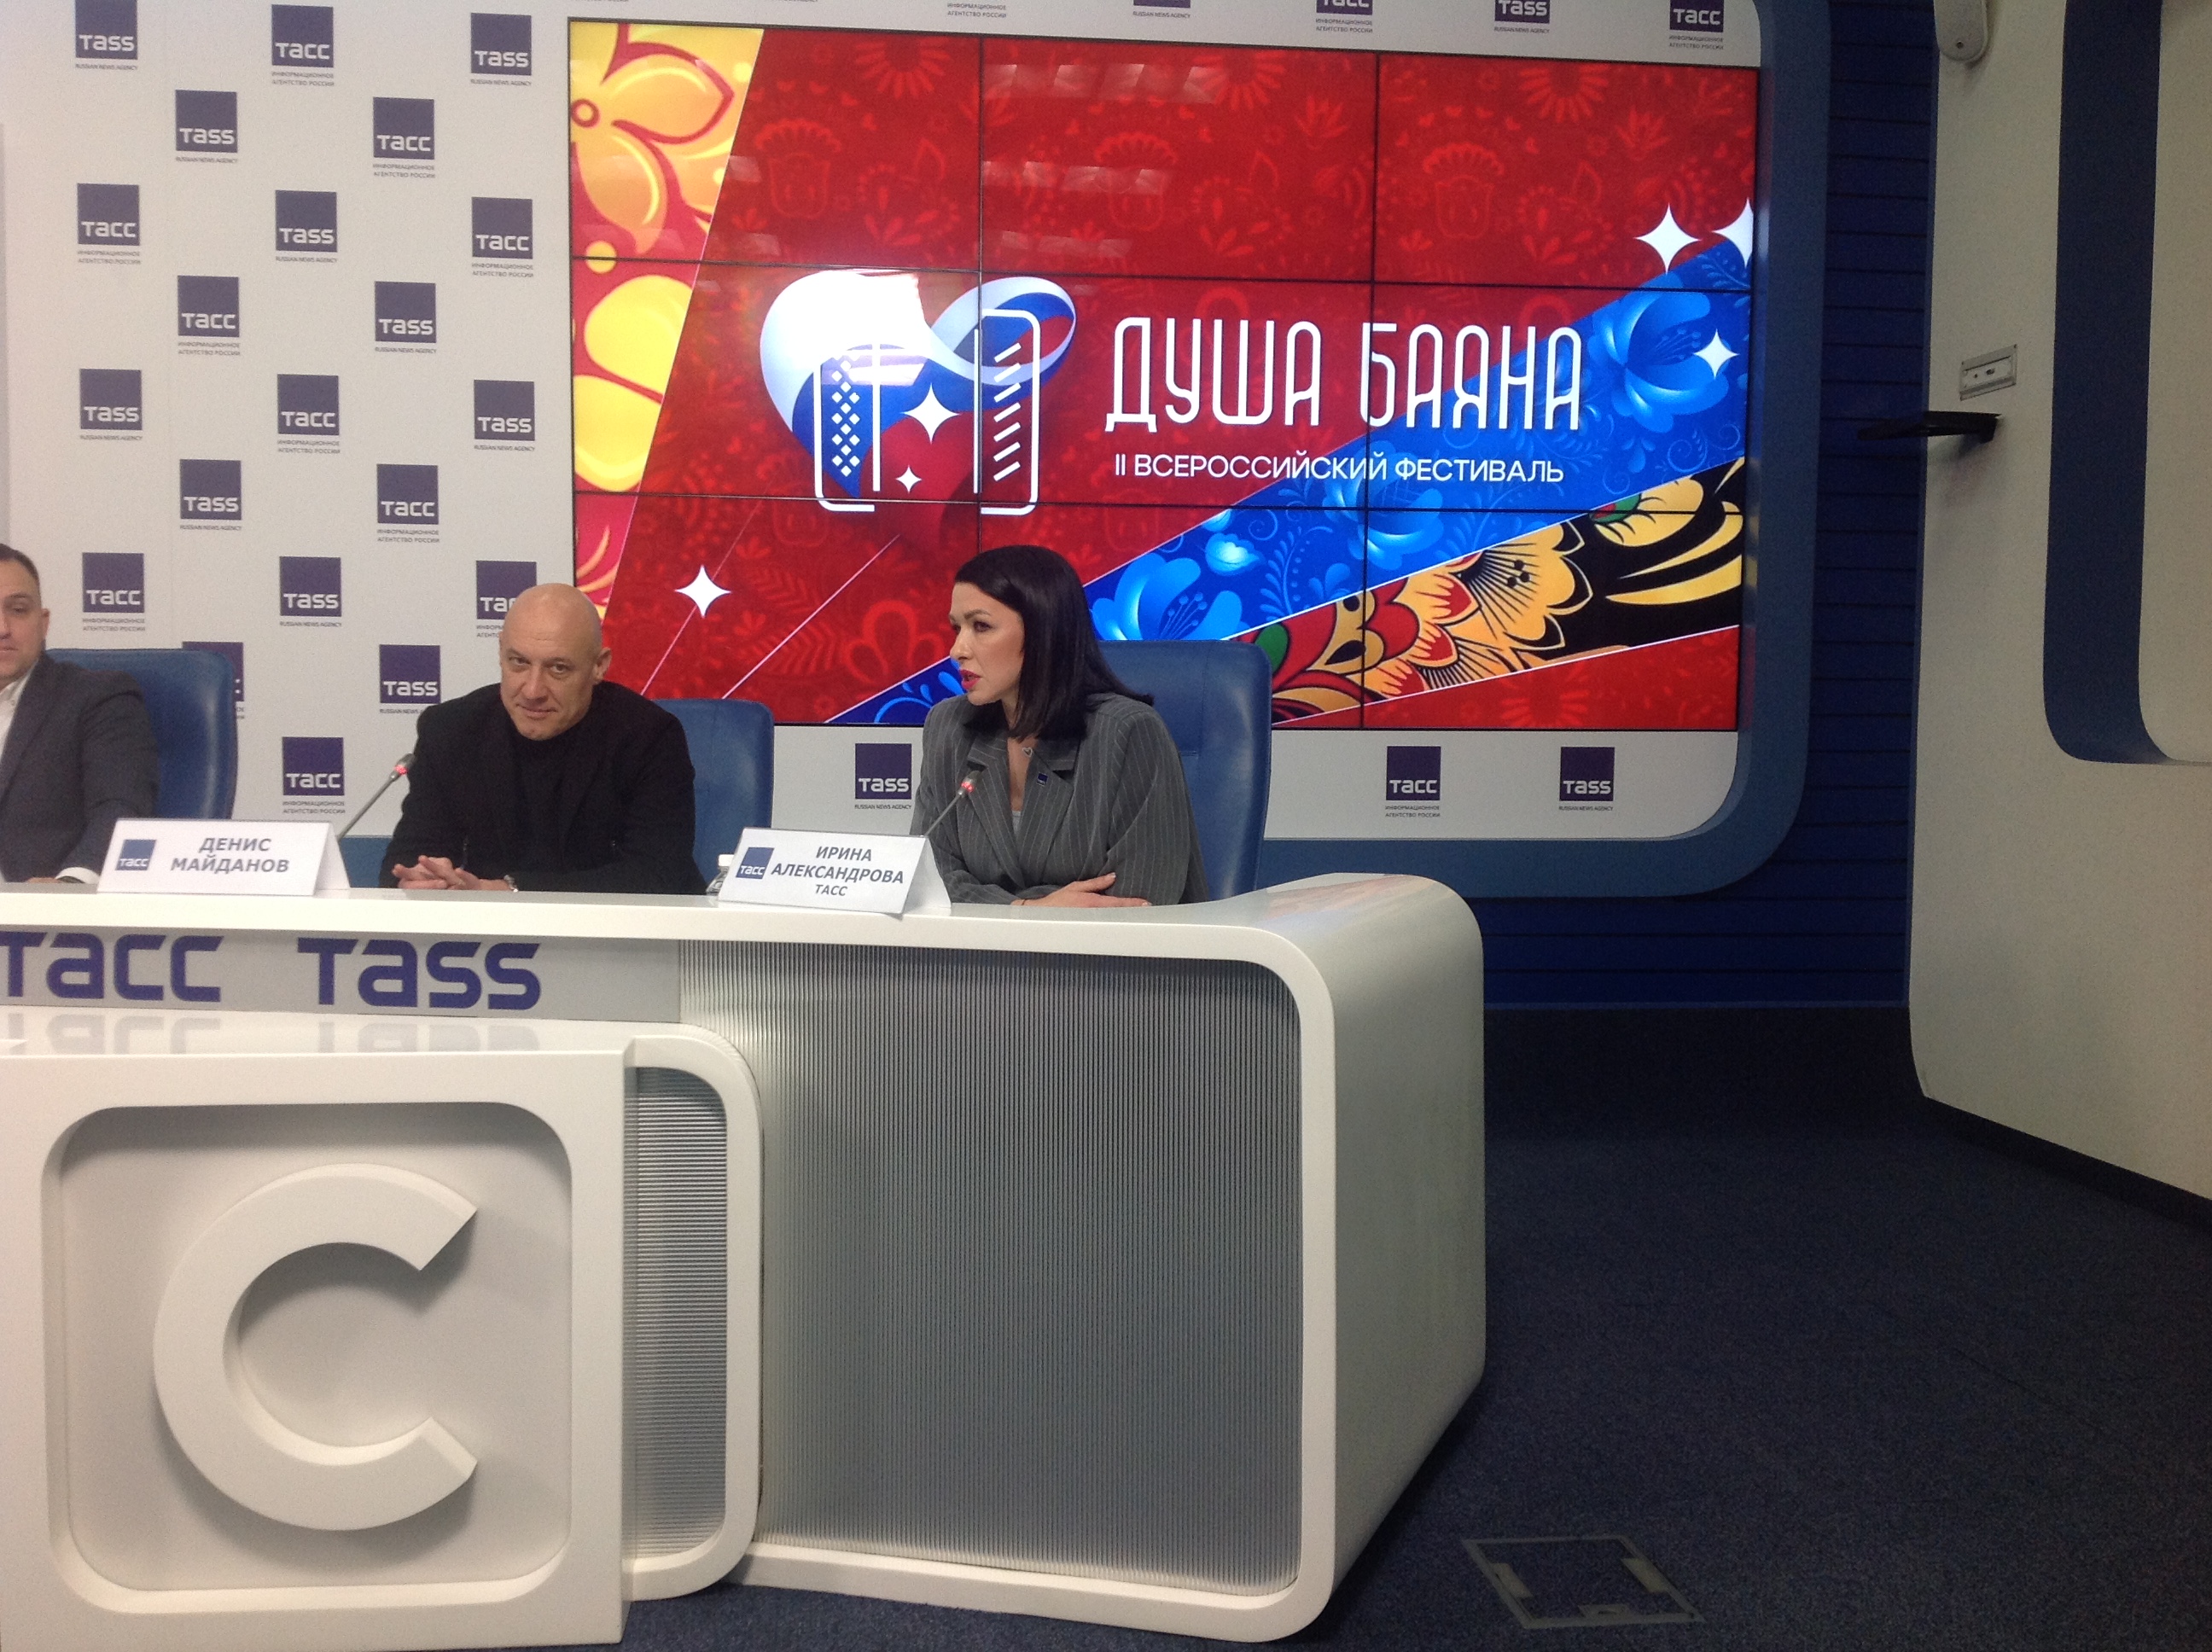 Денис Майданов на пресс-конференции Фестиваля Душа Баяна 